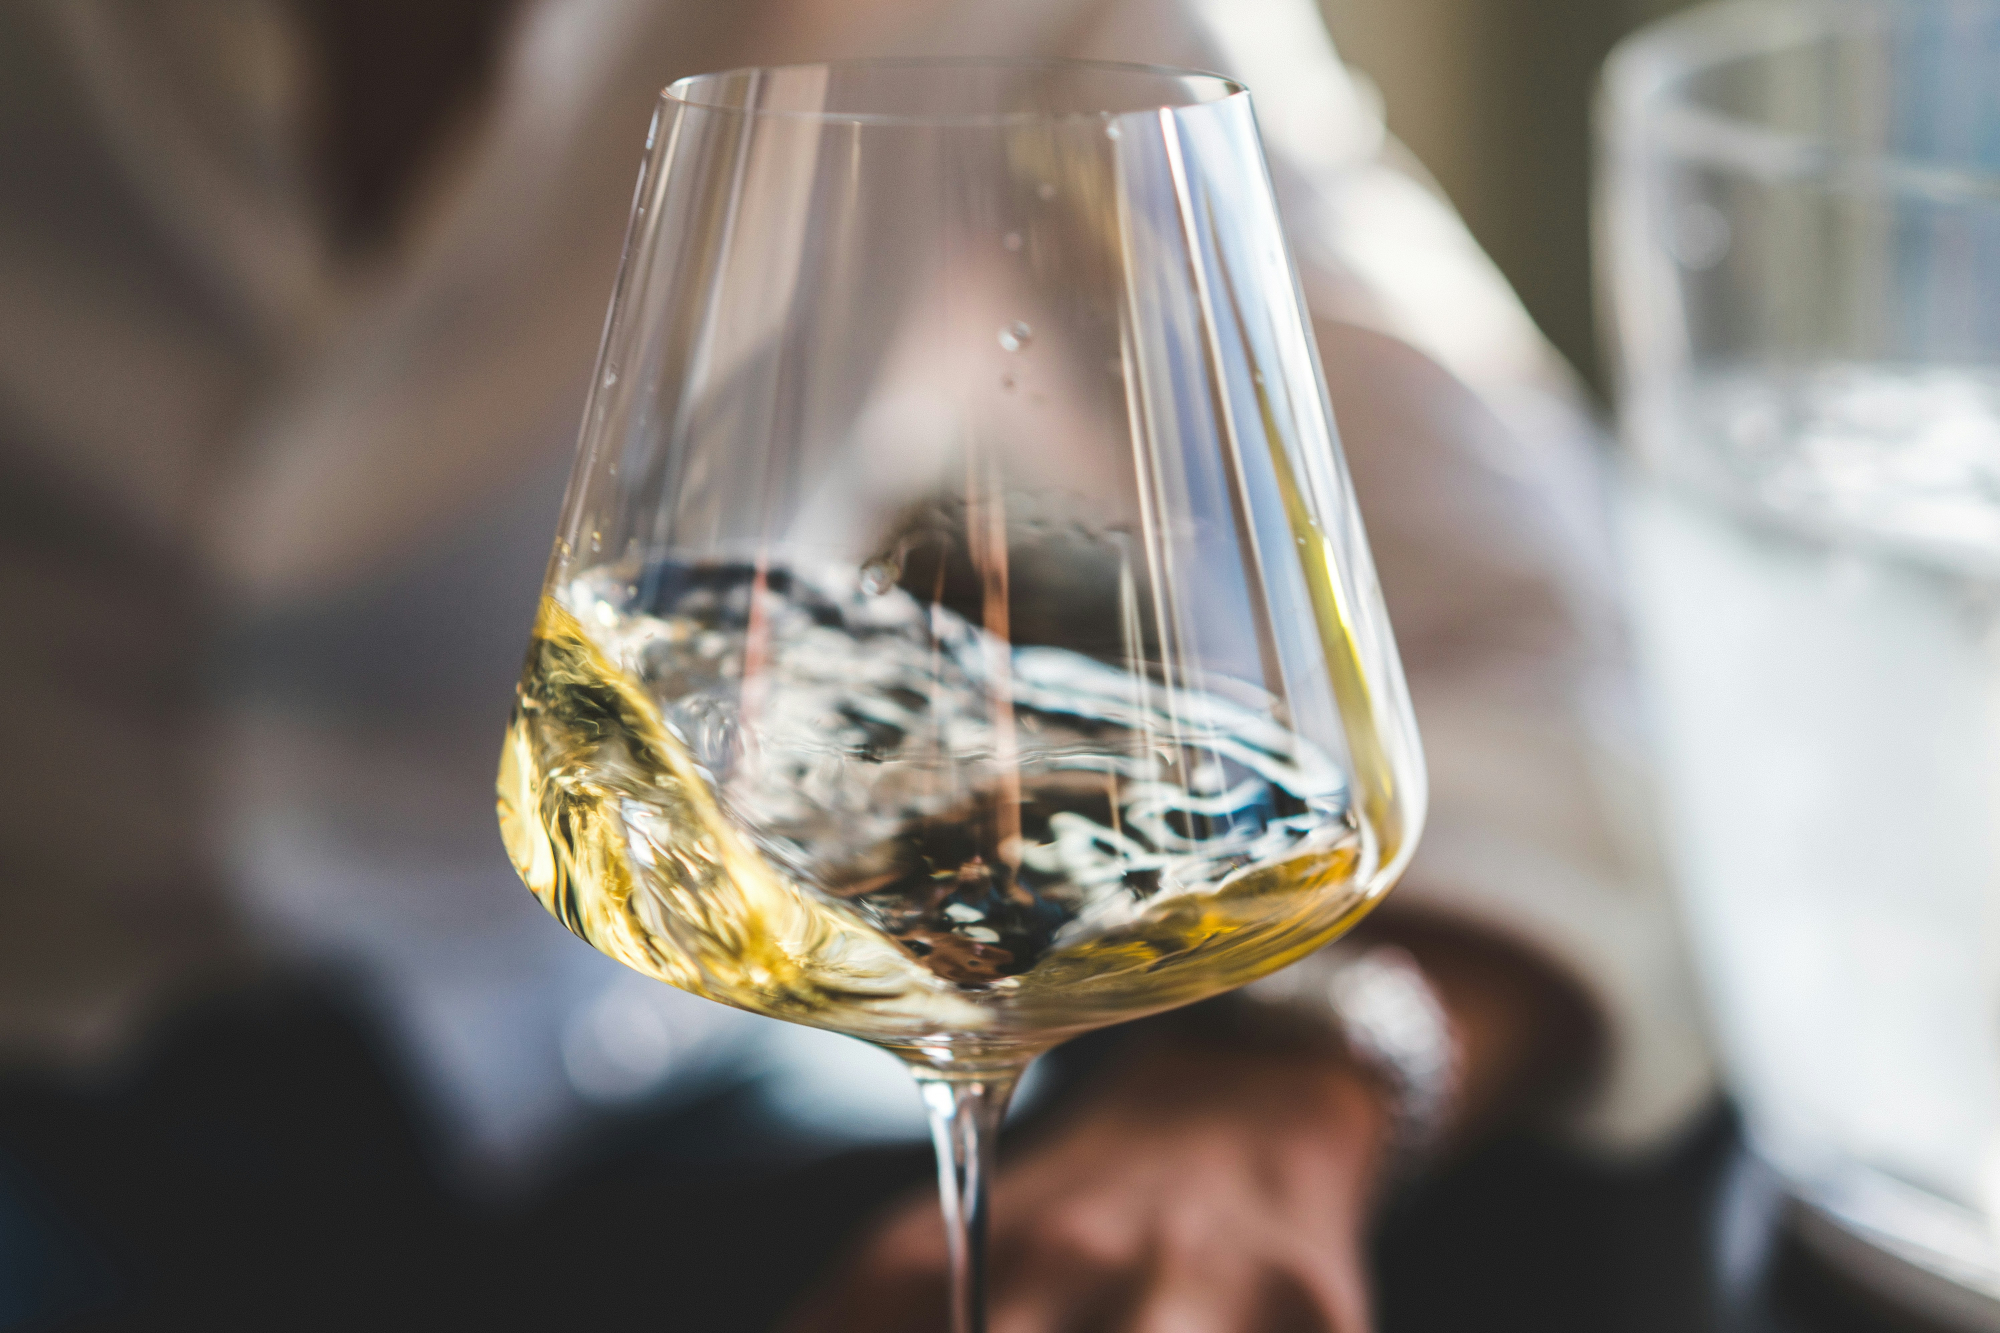 découvrez une sélection de verres à vin élégants et raffinés pour sublimer votre dégustation de vin. trouvez le verre parfait pour mettre en valeur chaque arôme et chaque nuance de votre vin préféré.